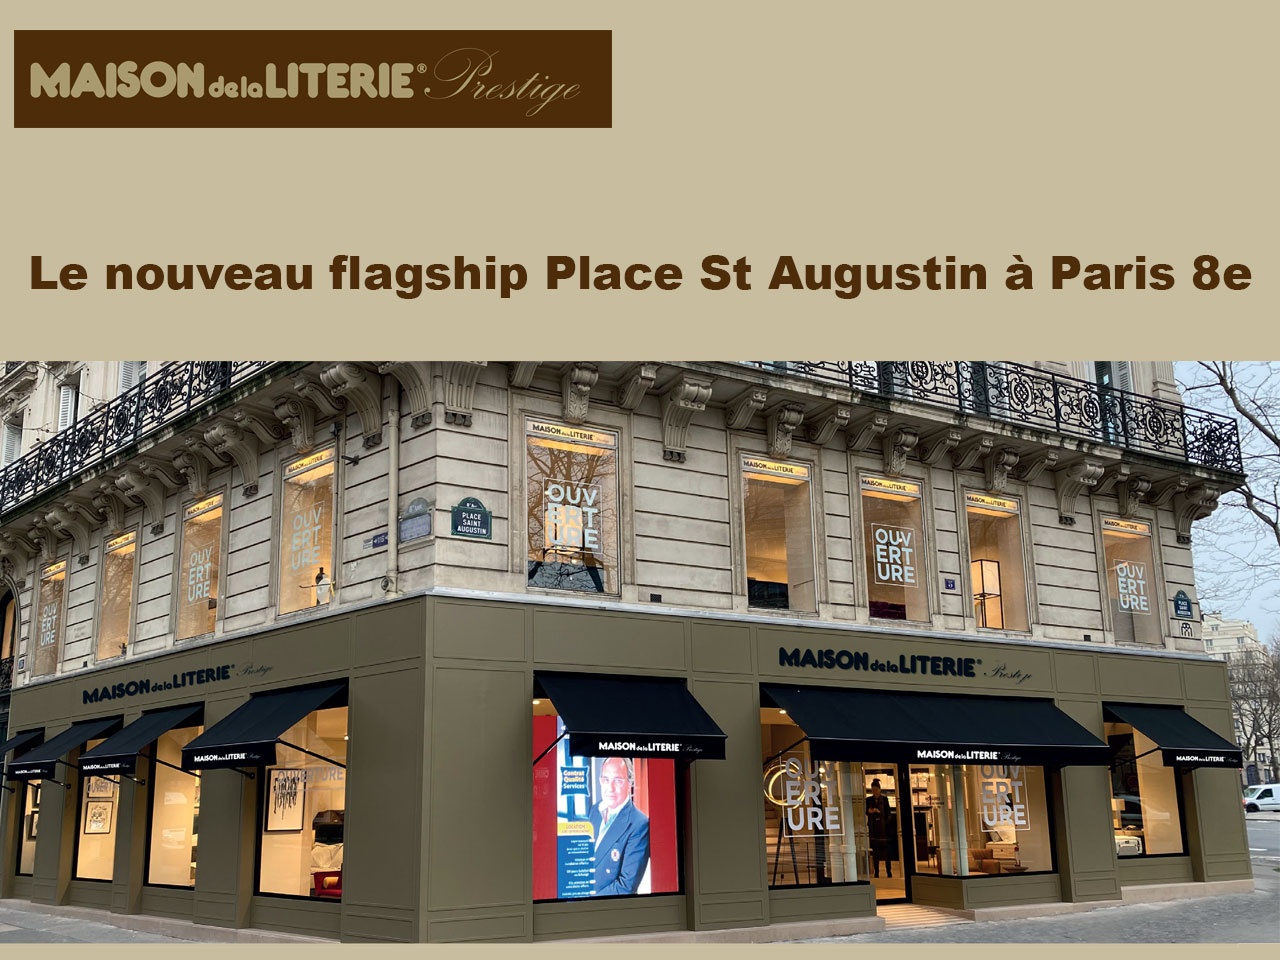 Maison de la Literie Prestige de la Place St Augustin symbolise le rayonnement de la marque !